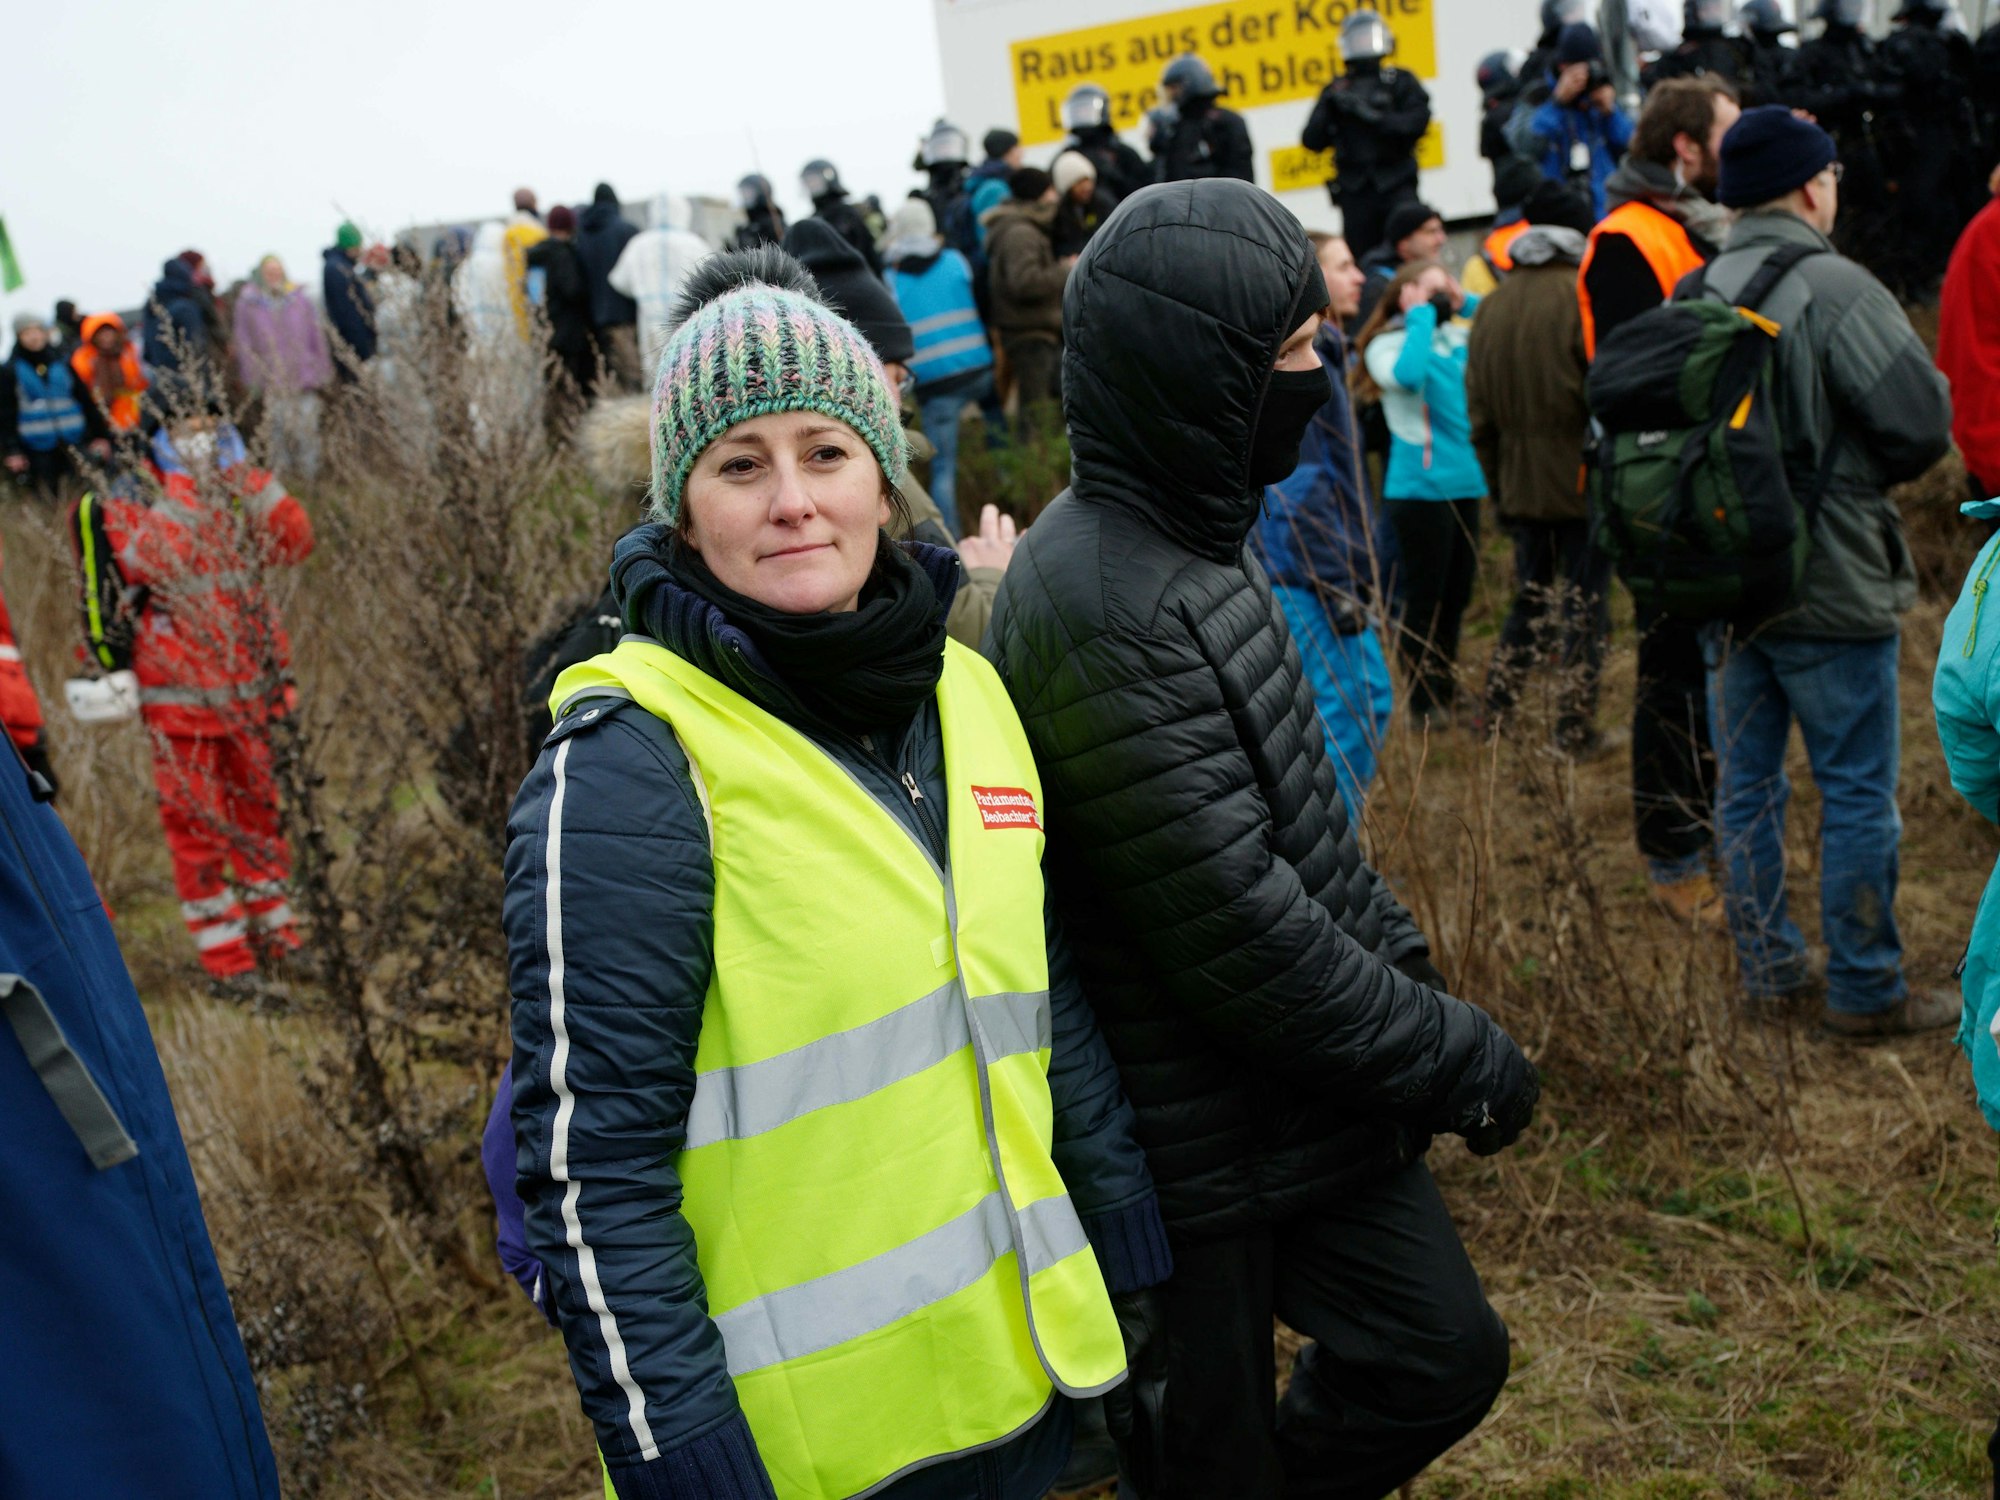 Janine Wissler, Vorsitzende der Partei Die Linke, beobachtet das Geschehen in Lützerath. Sie trägt eine gelbe Warnweste.